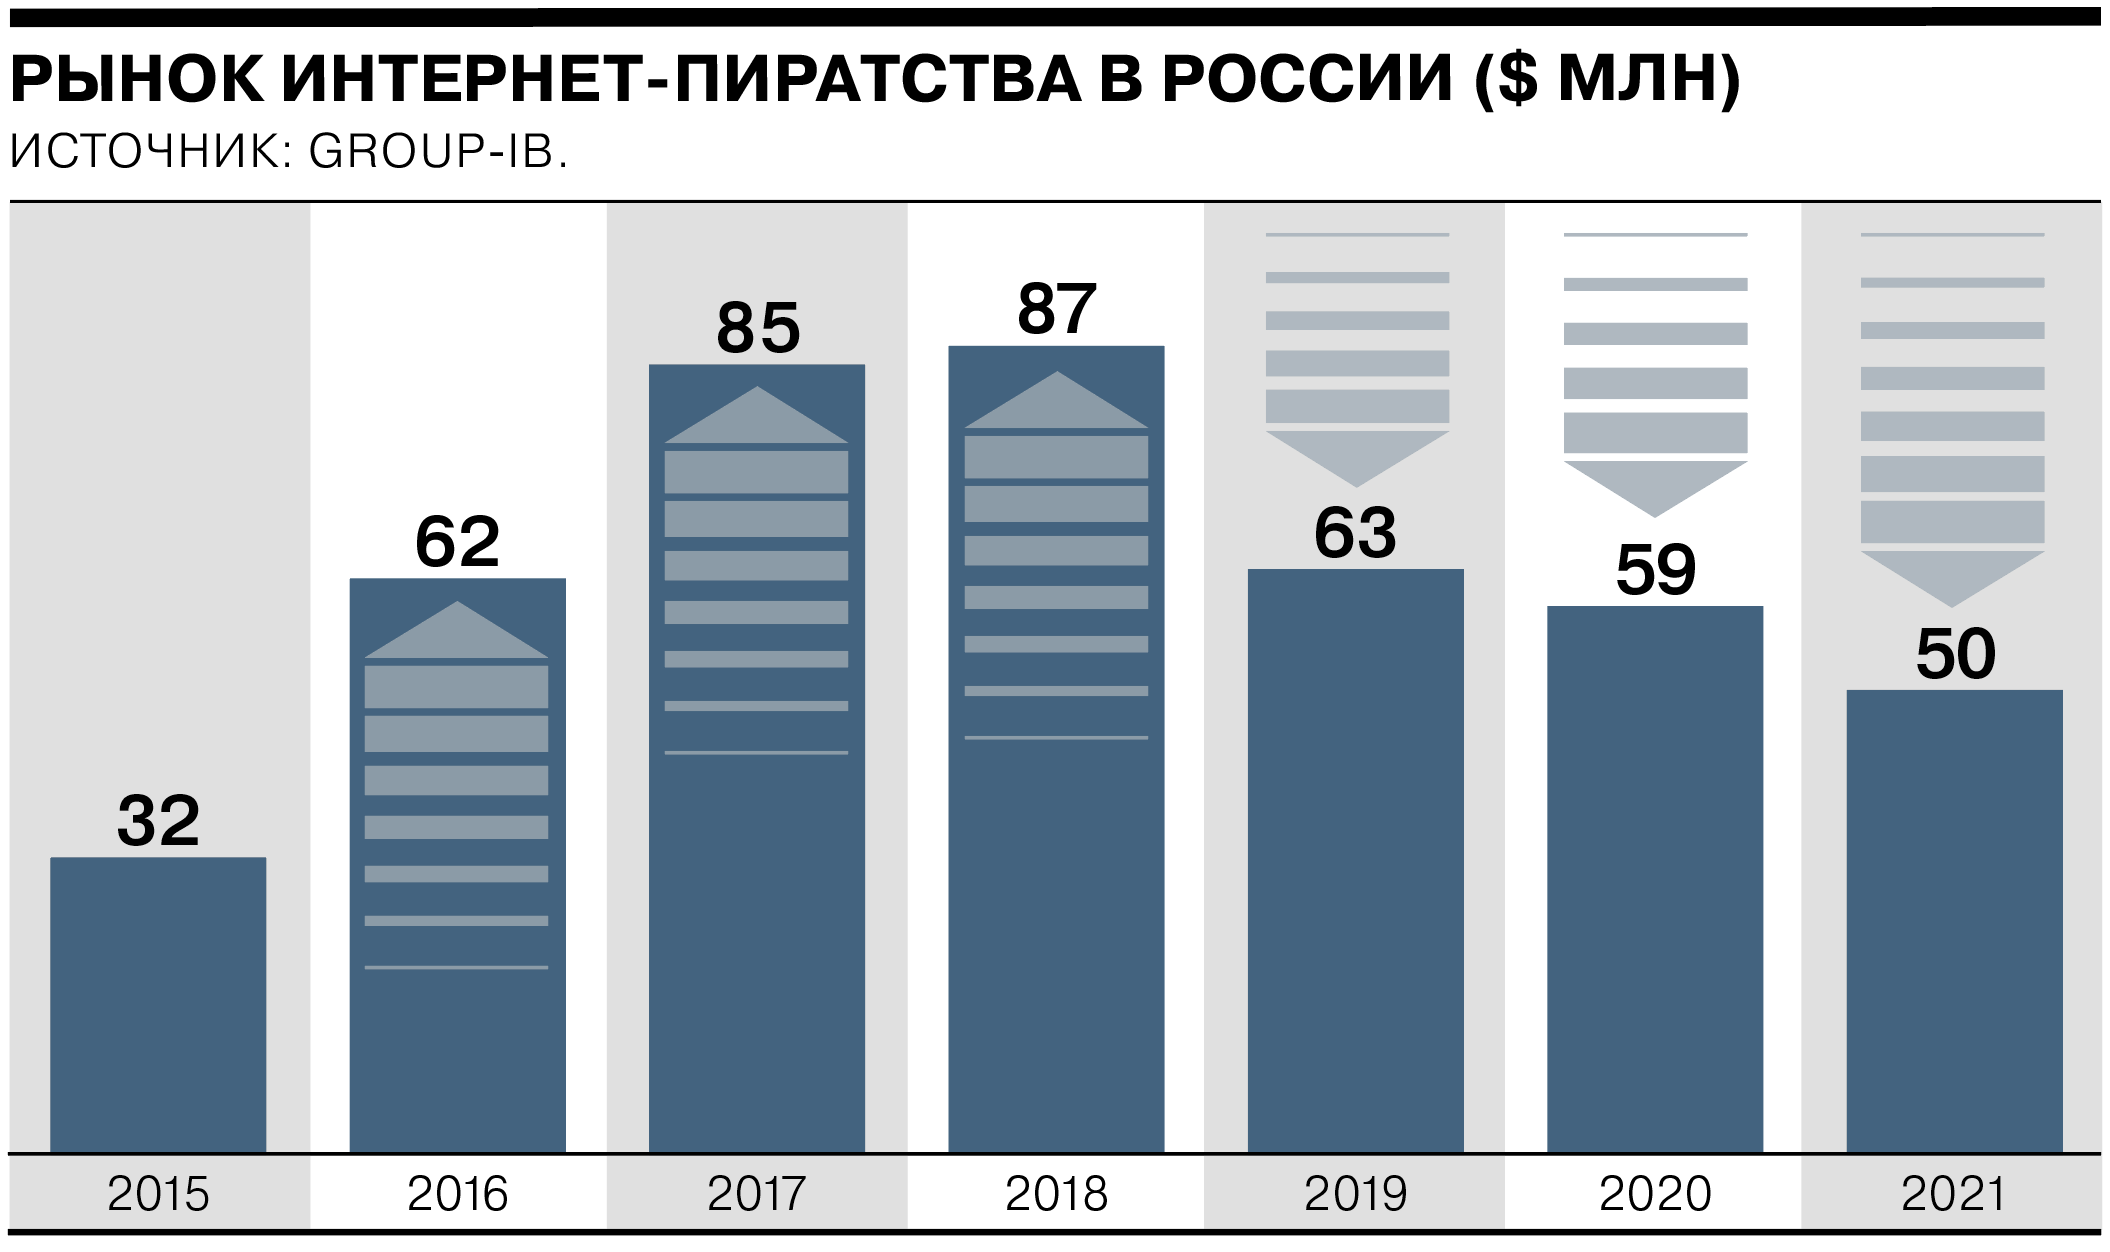 Рынок интернет-пиратства в РФ снижается третий год подряд